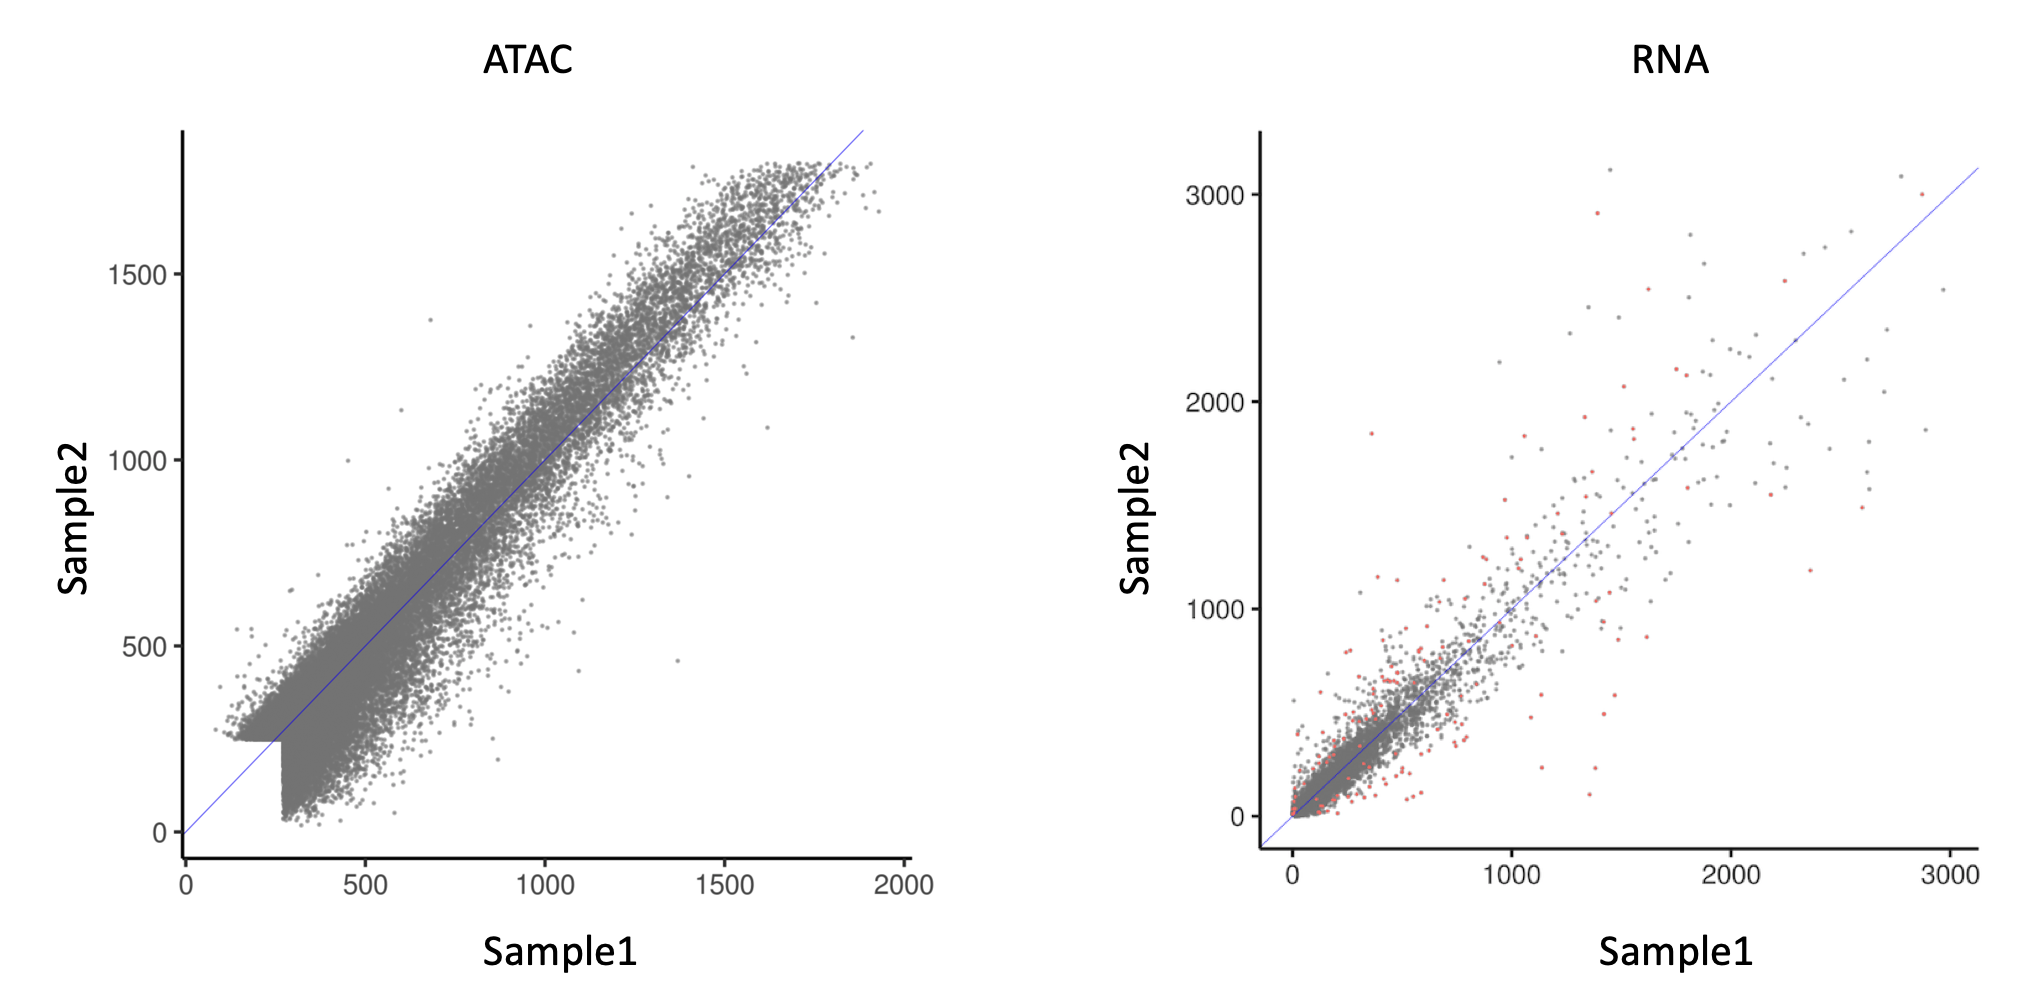 ATAC_vs_RNA_heteroskedasticity